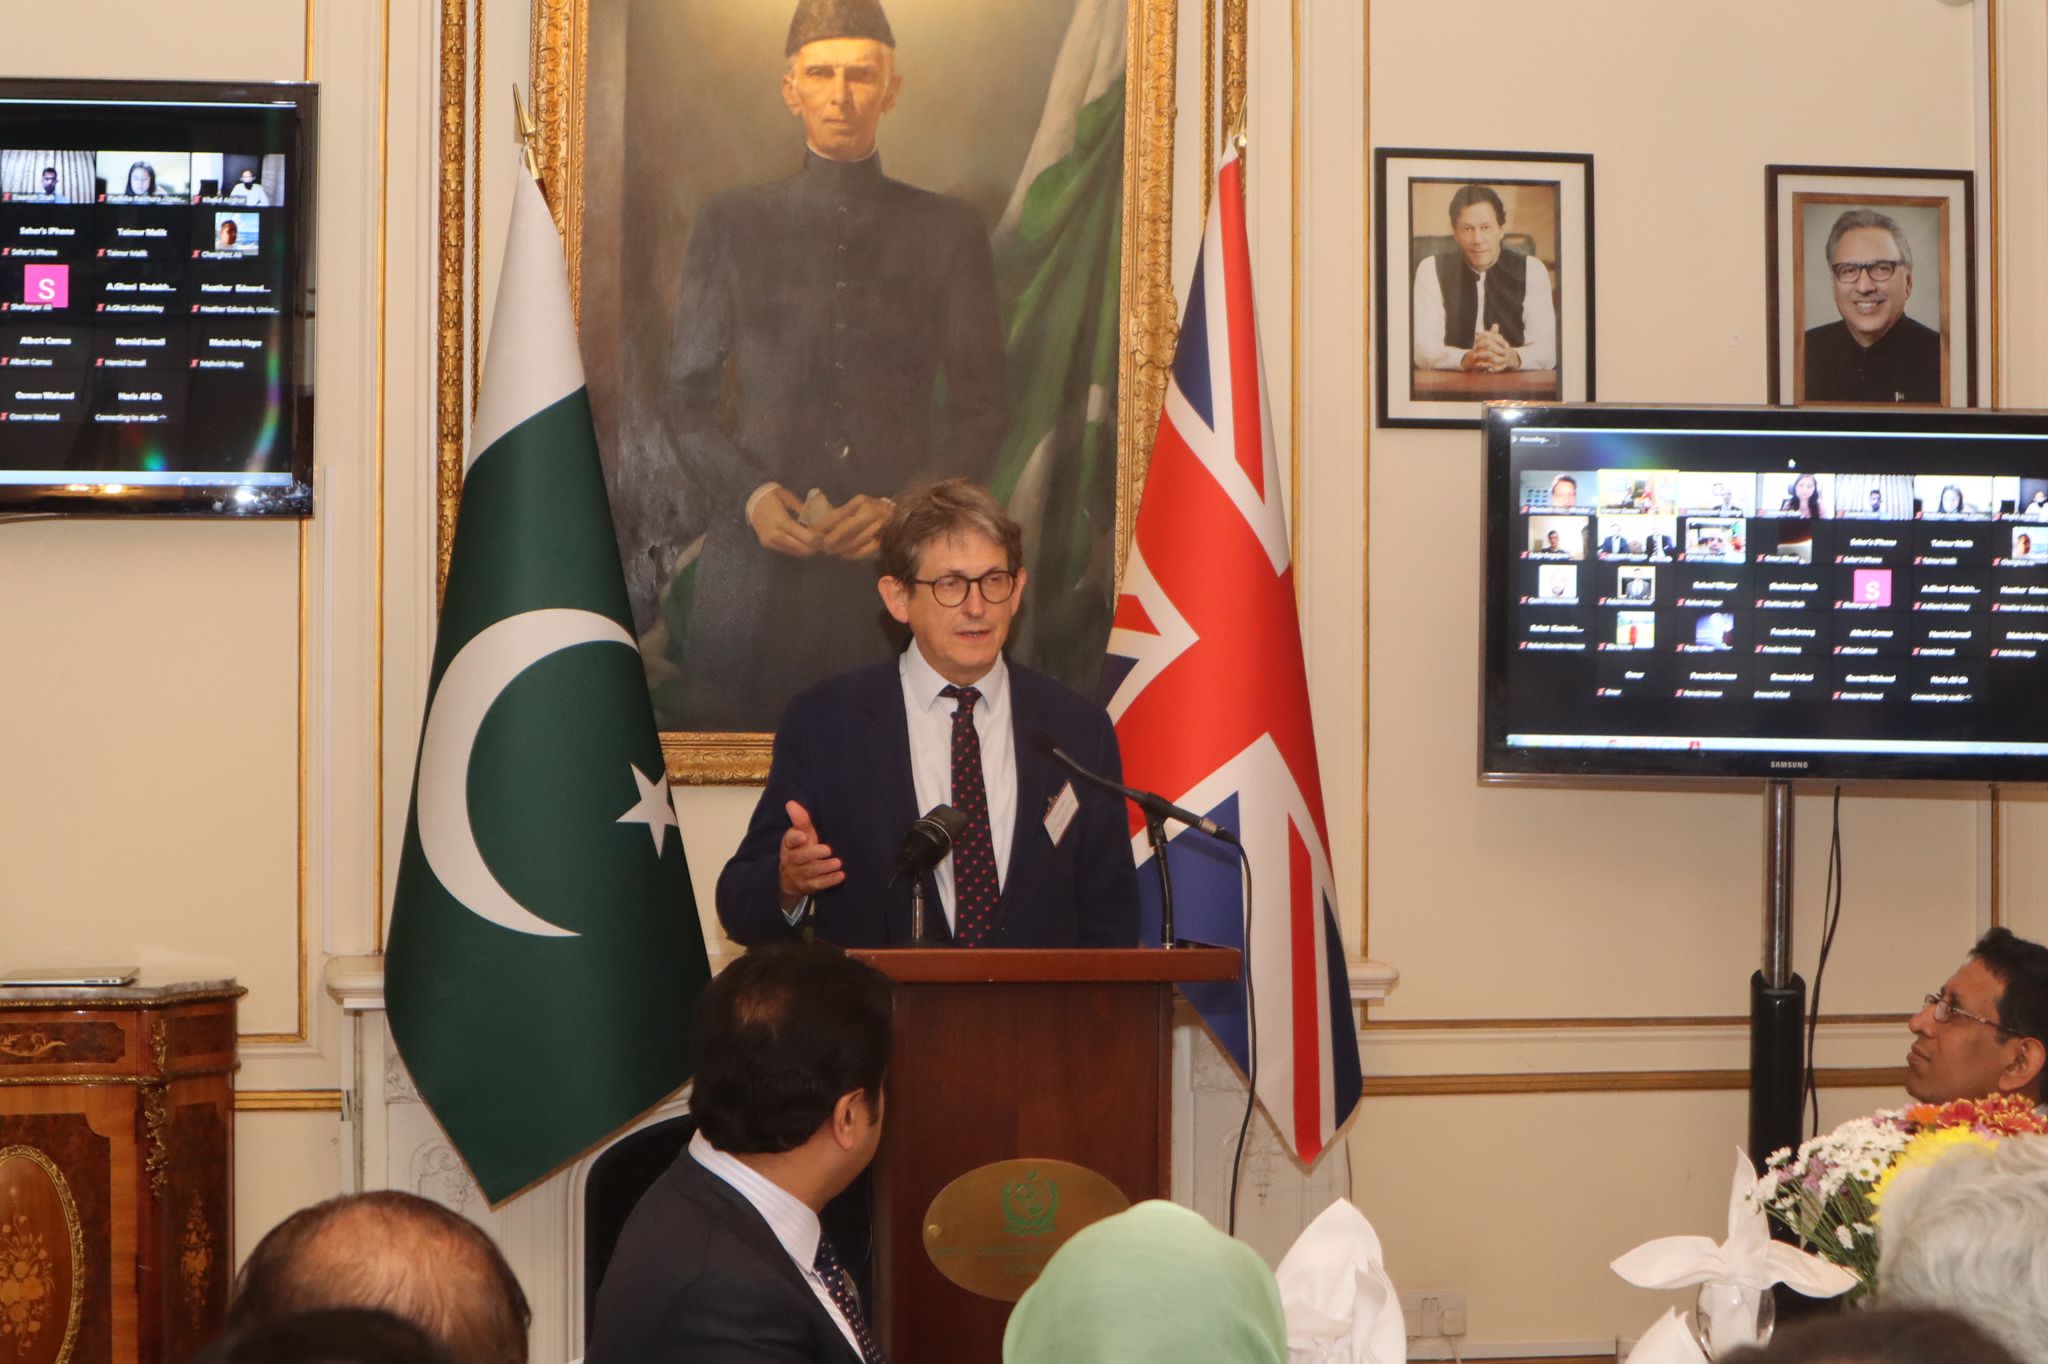 Alan Rusbridger giving a speech at the Oxford Pakistan Programme launch